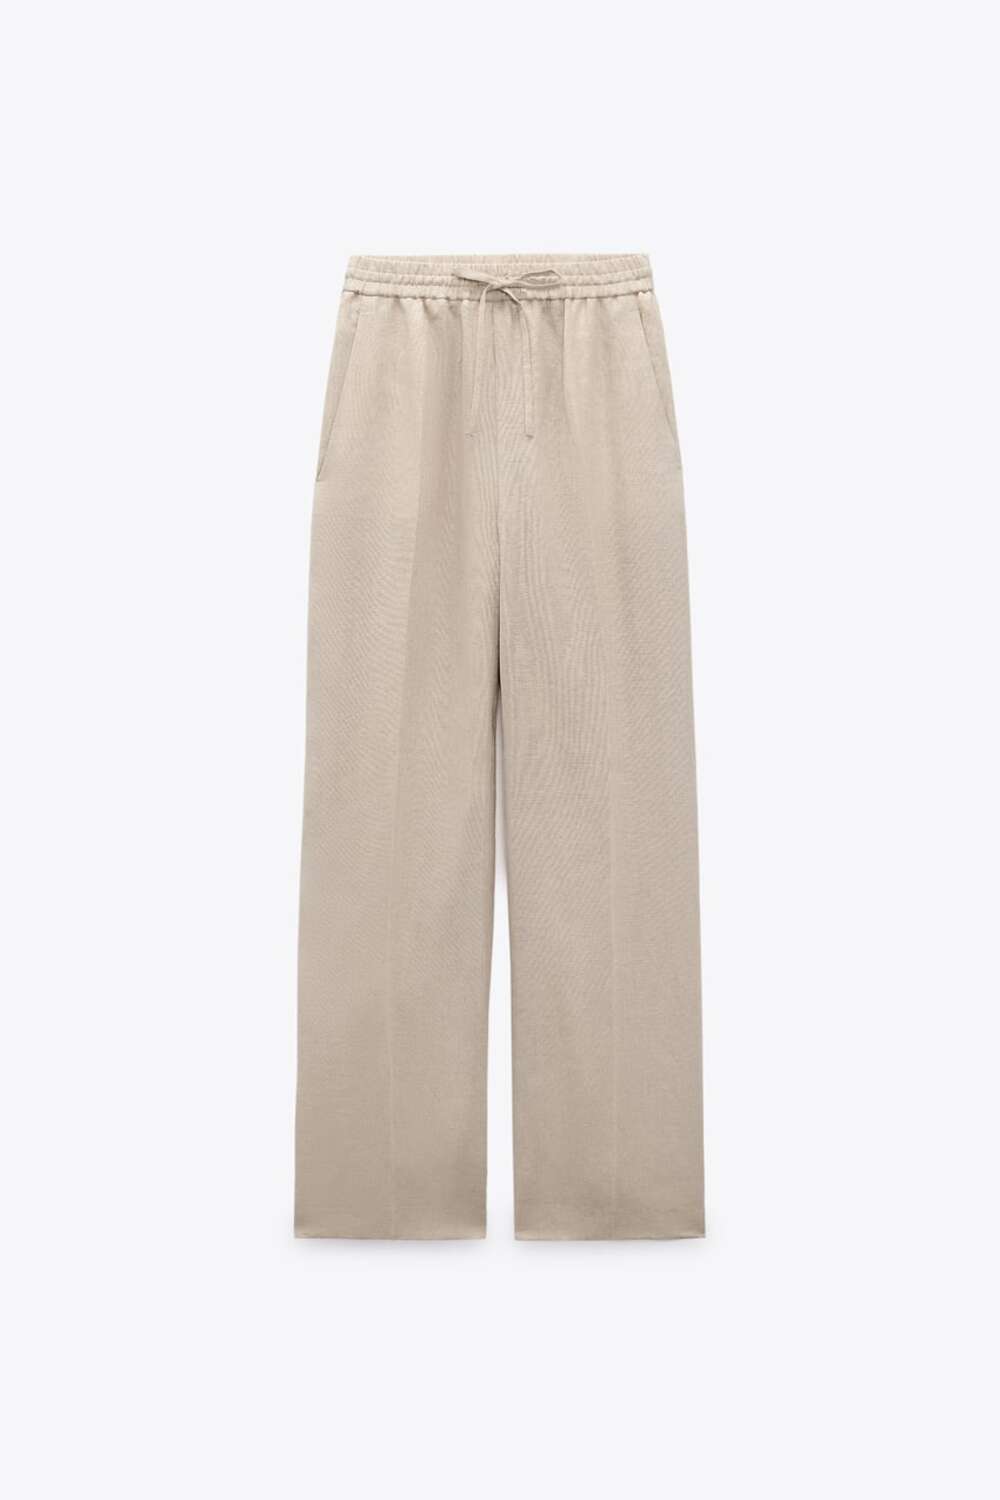 Lanene pantalone Trend tihog luksuza sve više raste, a Zara ima idealne komade za to